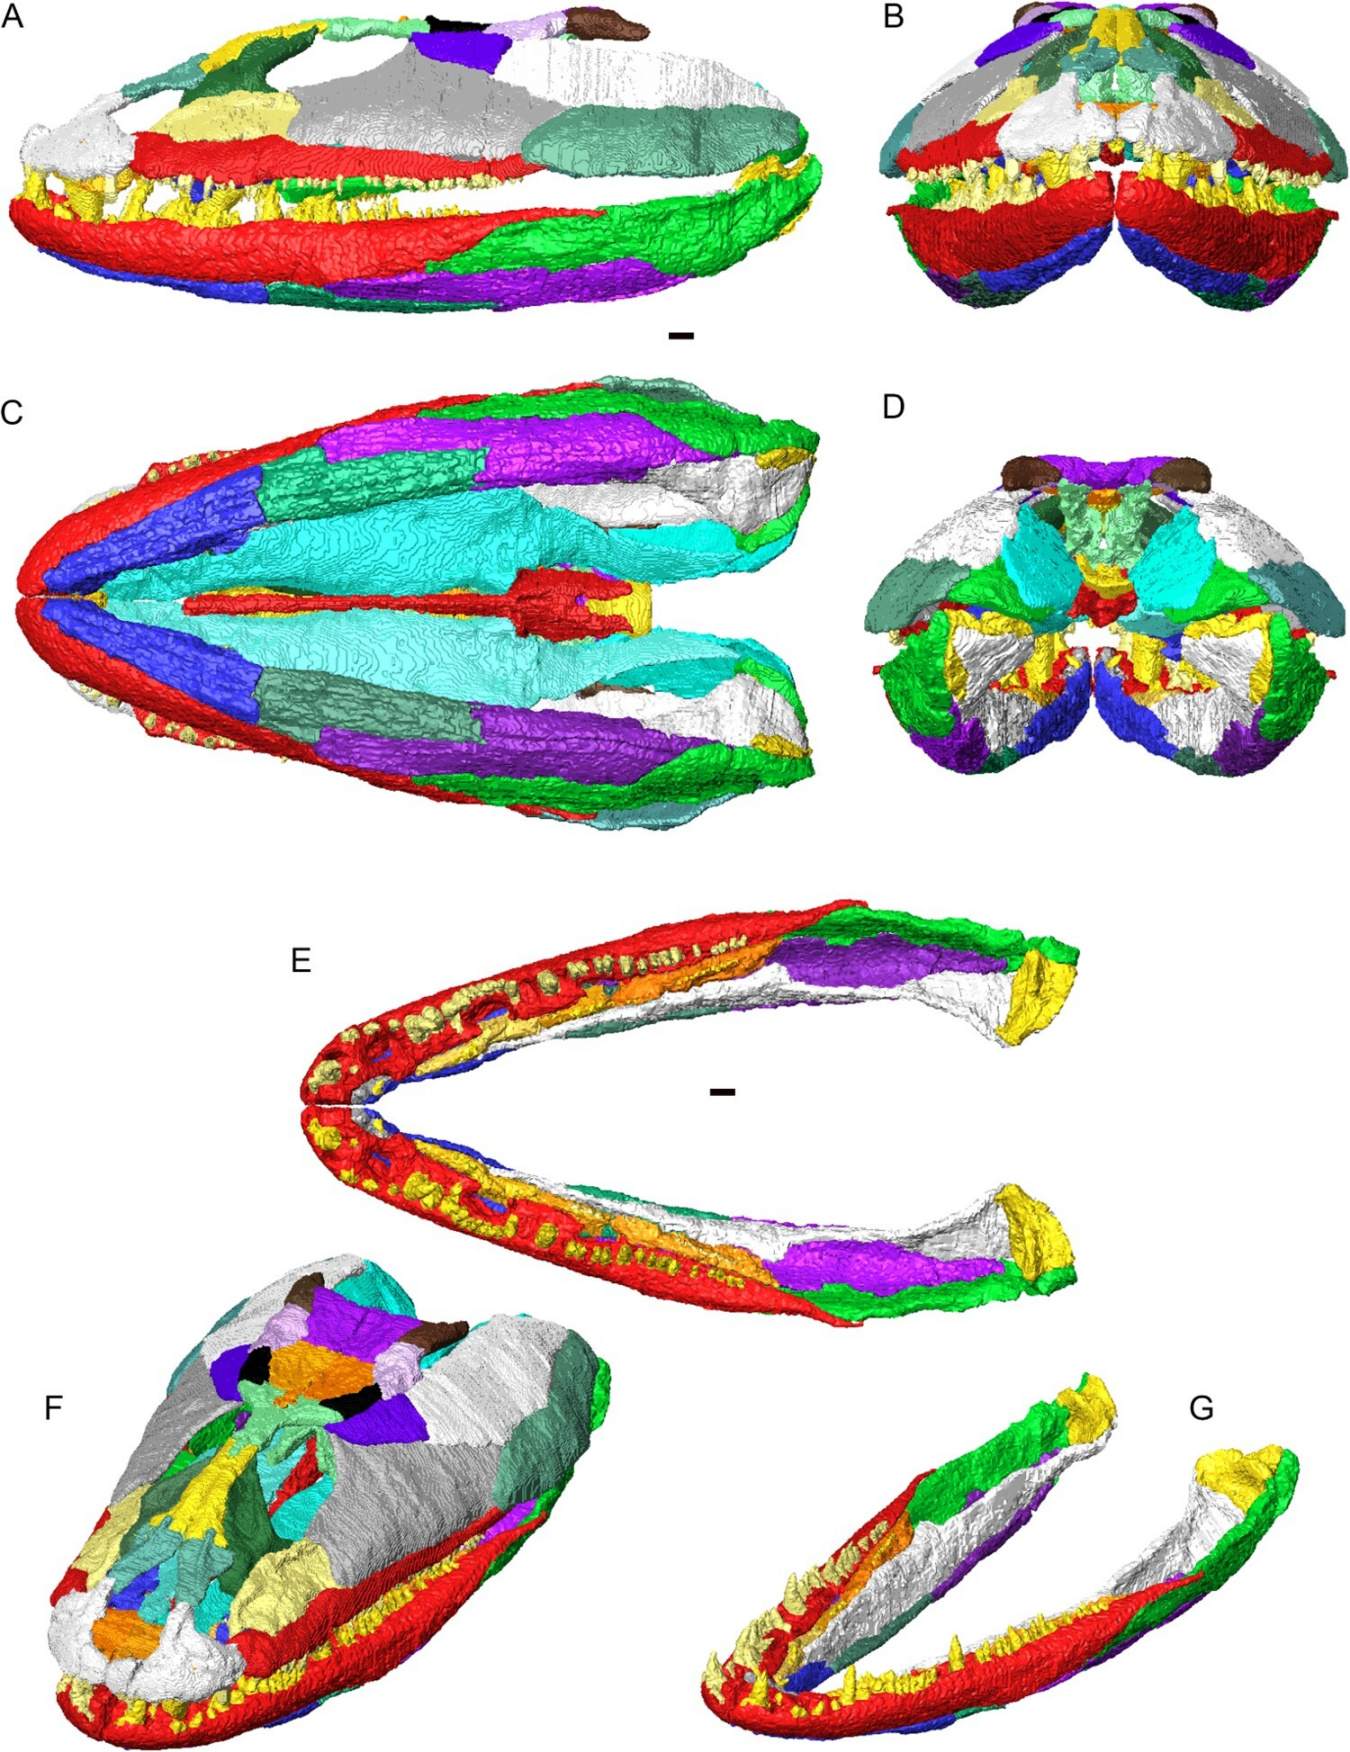 3D rekonstrukcija lobanje in spodnje čeljusti Crassigyrinus scoticus v artikulaciji. Posamezne kosti prikazane v različnih barvah. A, levi stranski pogled; B, pogled od spredaj; C, ventralni pogled; D, pogled od zadaj; E, zgibne spodnje čeljusti (brez lobanje) v hrbtnem pogledu; F, lobanja in spodnja čeljust v dorzolateralnem poševnem pogledu; G, zgibne spodnje čeljusti v dorzolateralnem poševnem pogledu.